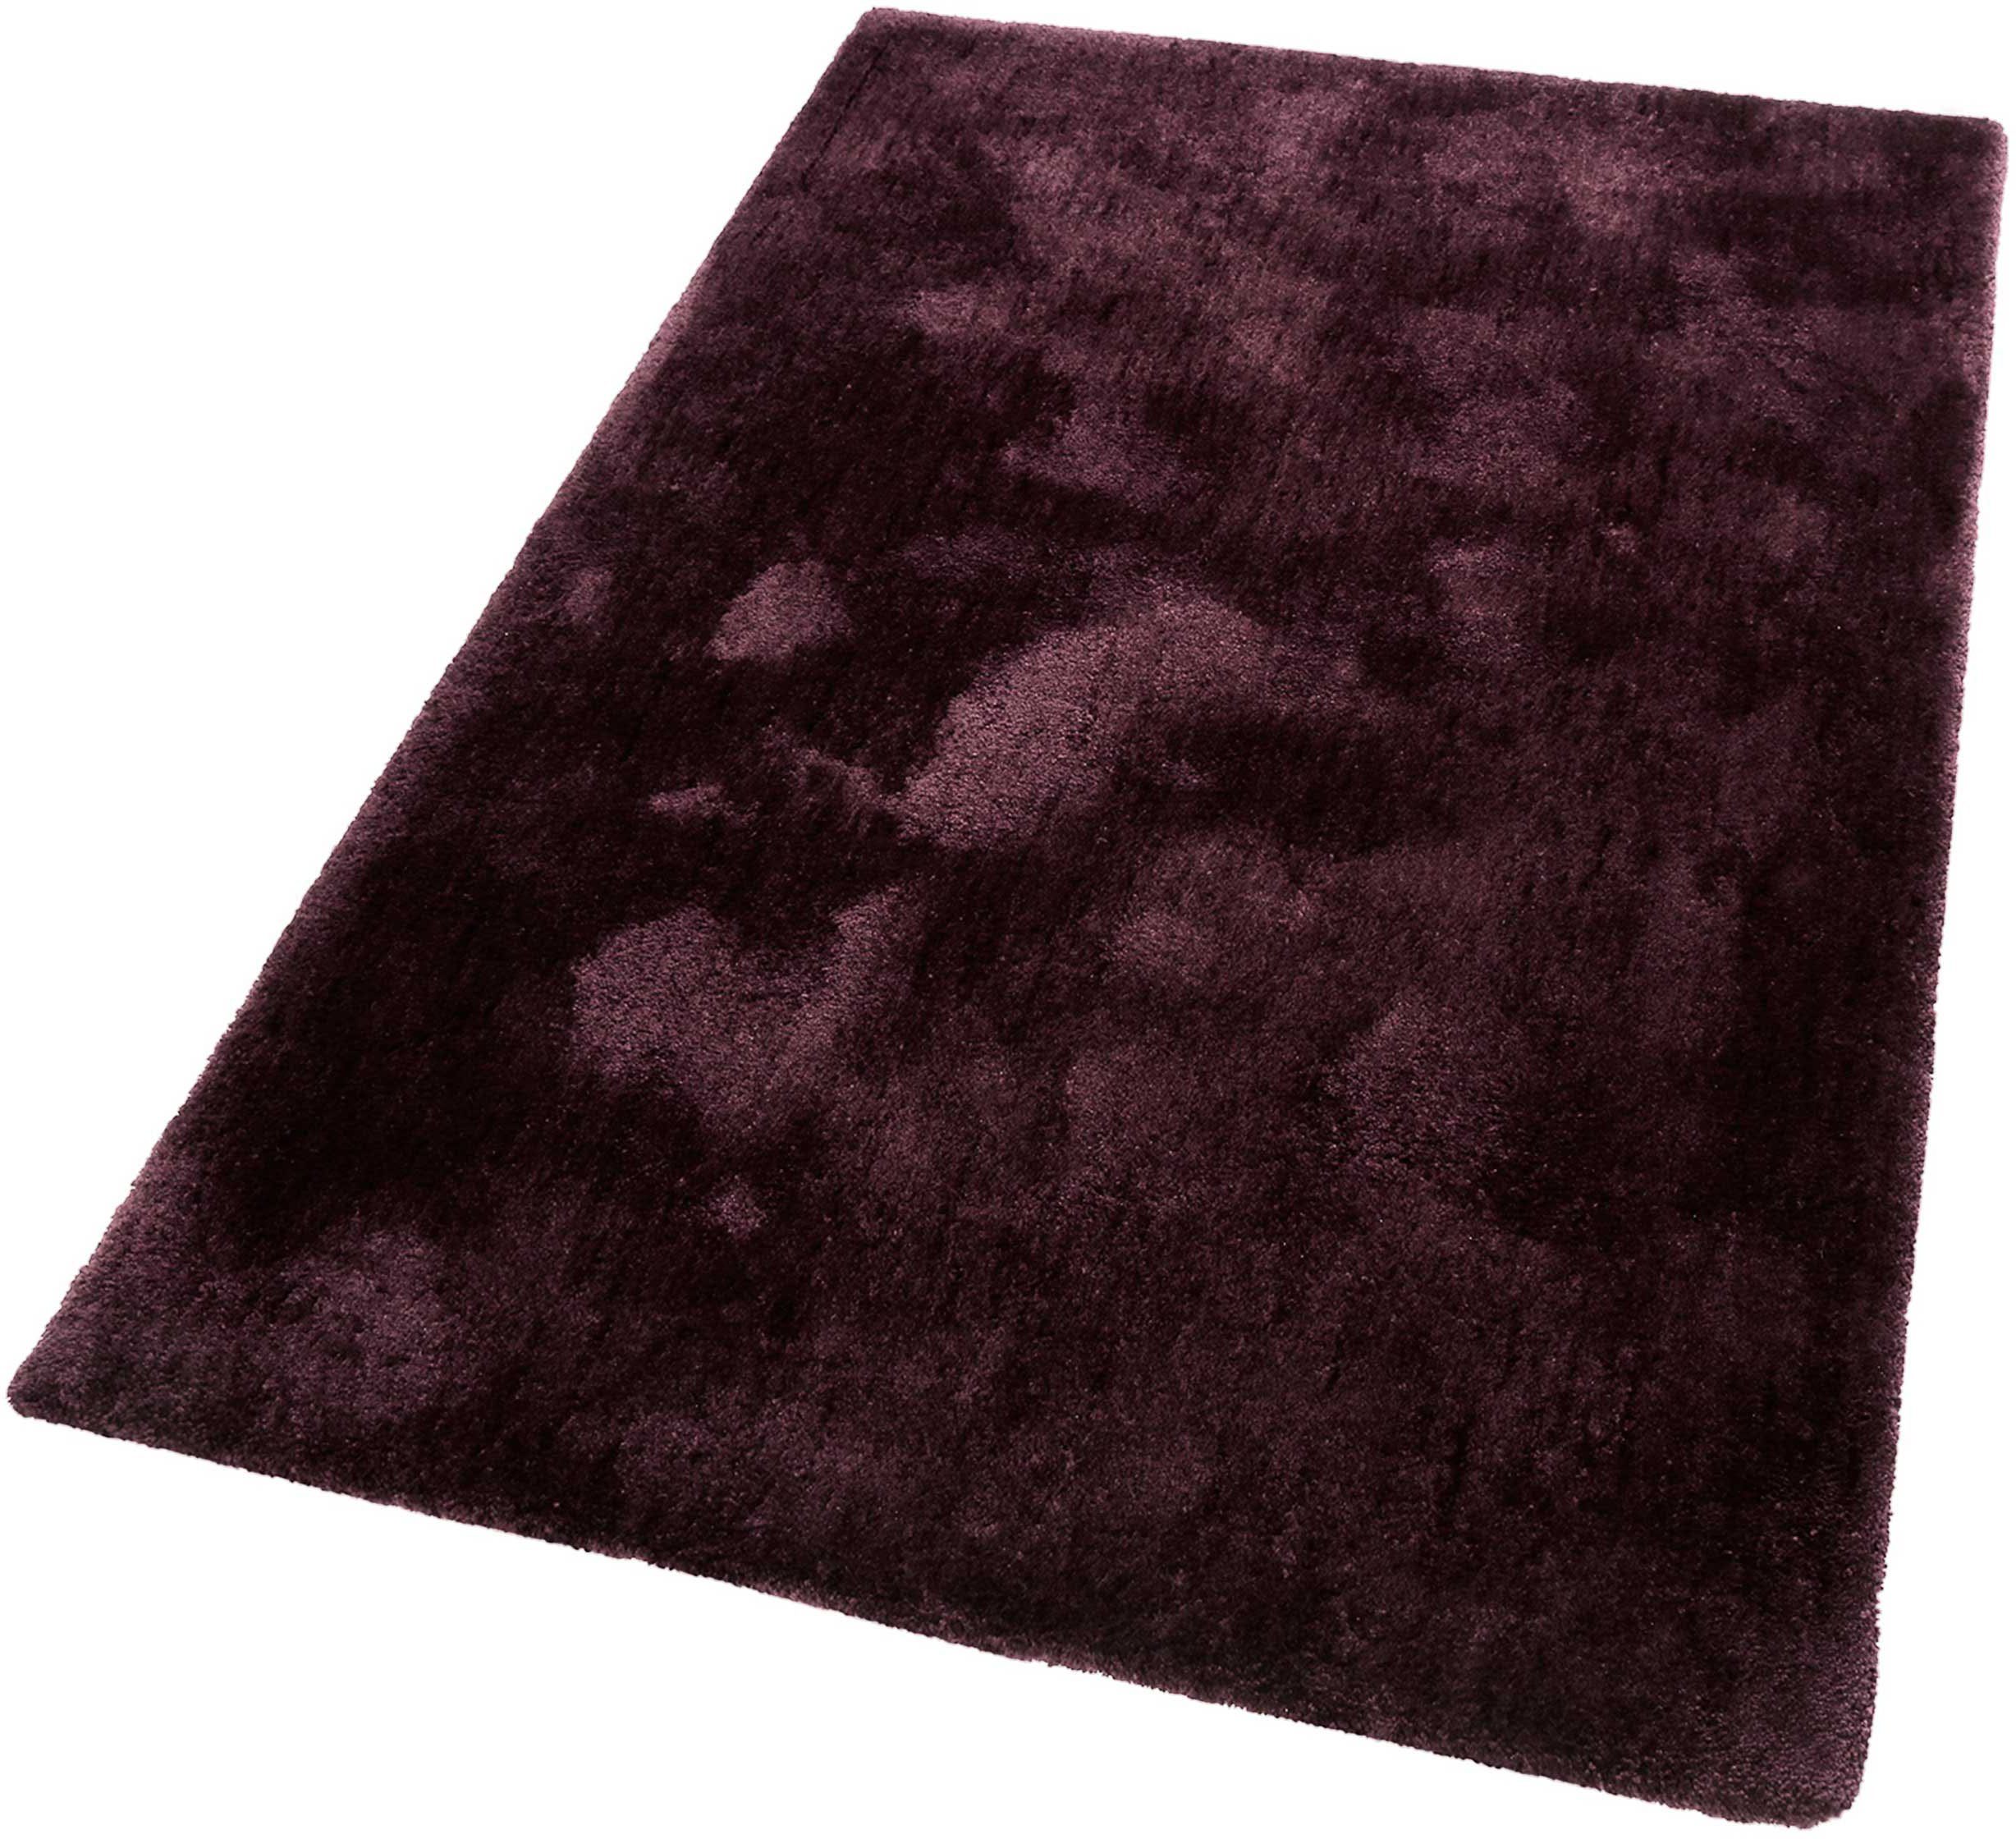 Hoogpolig vloerkleed, ESPRIT, »Relaxx«, hoogte 25 mm, getuft